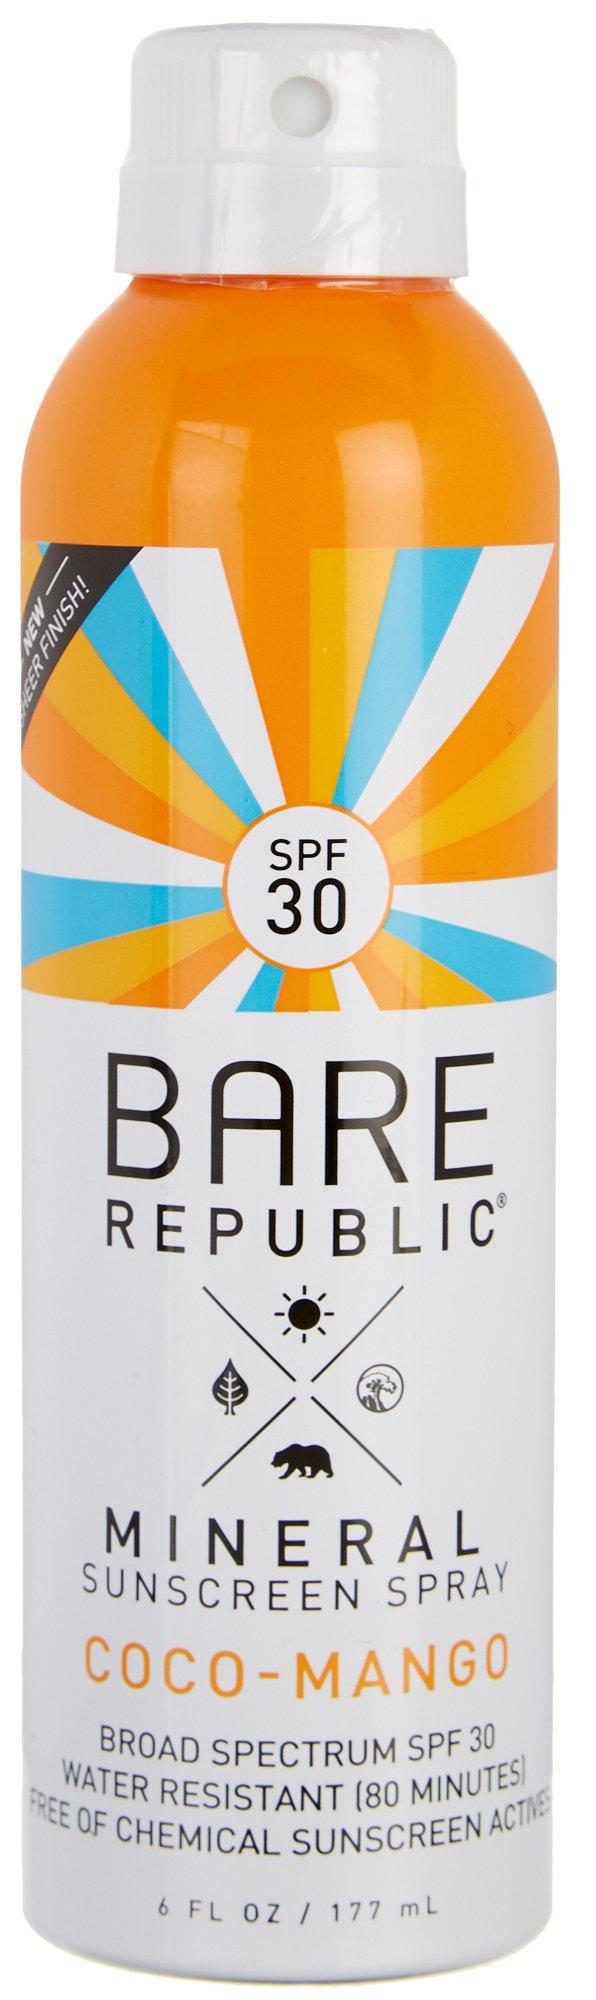 Bare Republic Coco Mango SPF 30 Mineral Sunscreen Spray